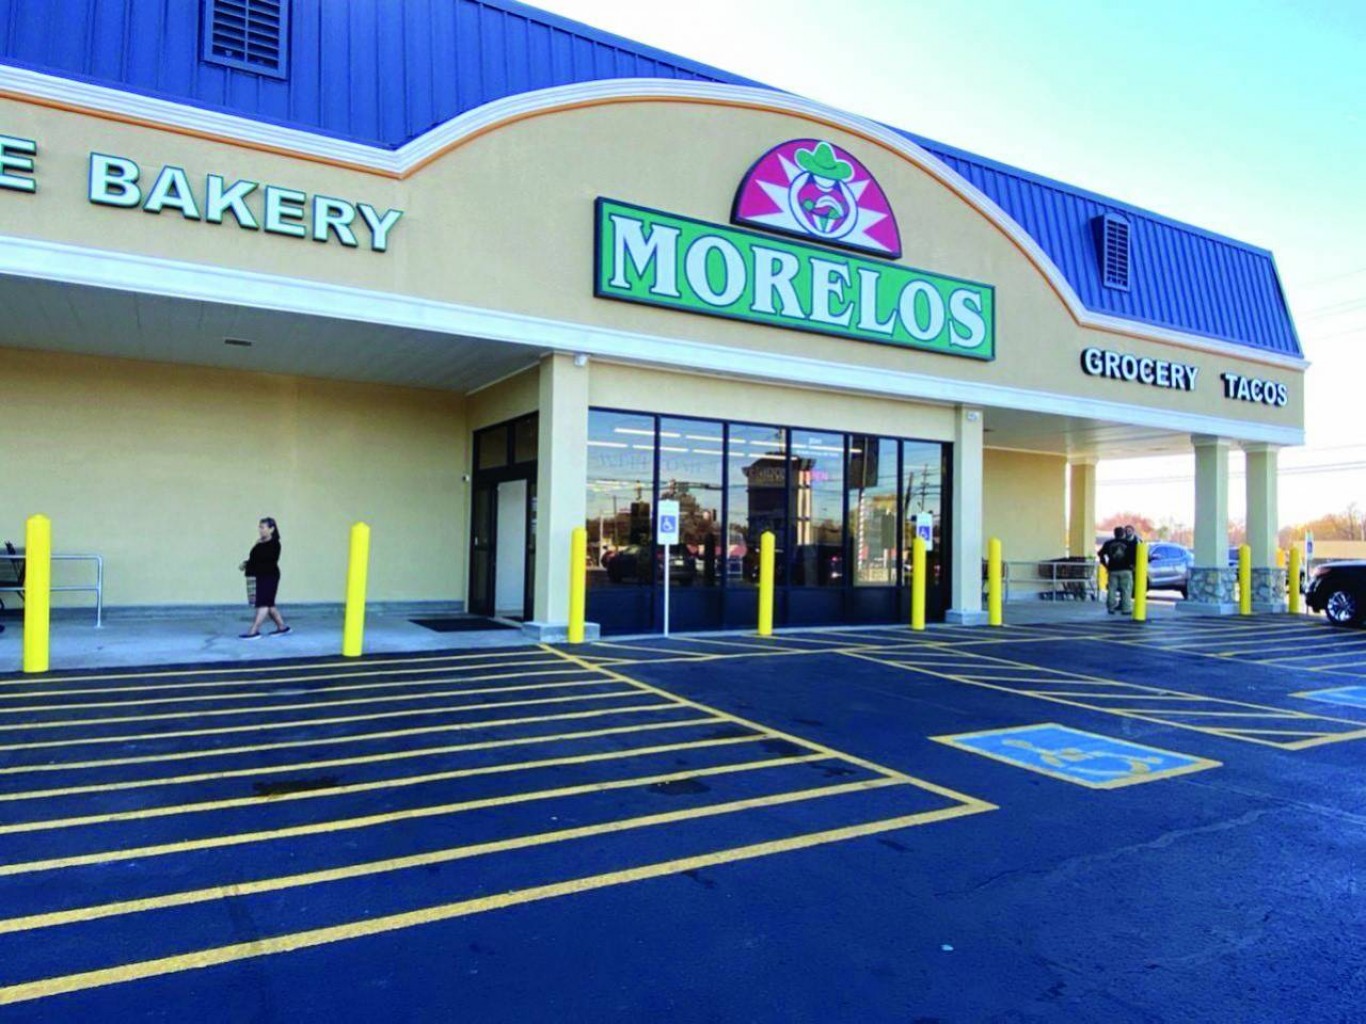 Supermercado Morelos Gran Fiesta de Inauguración en Broken Arrow